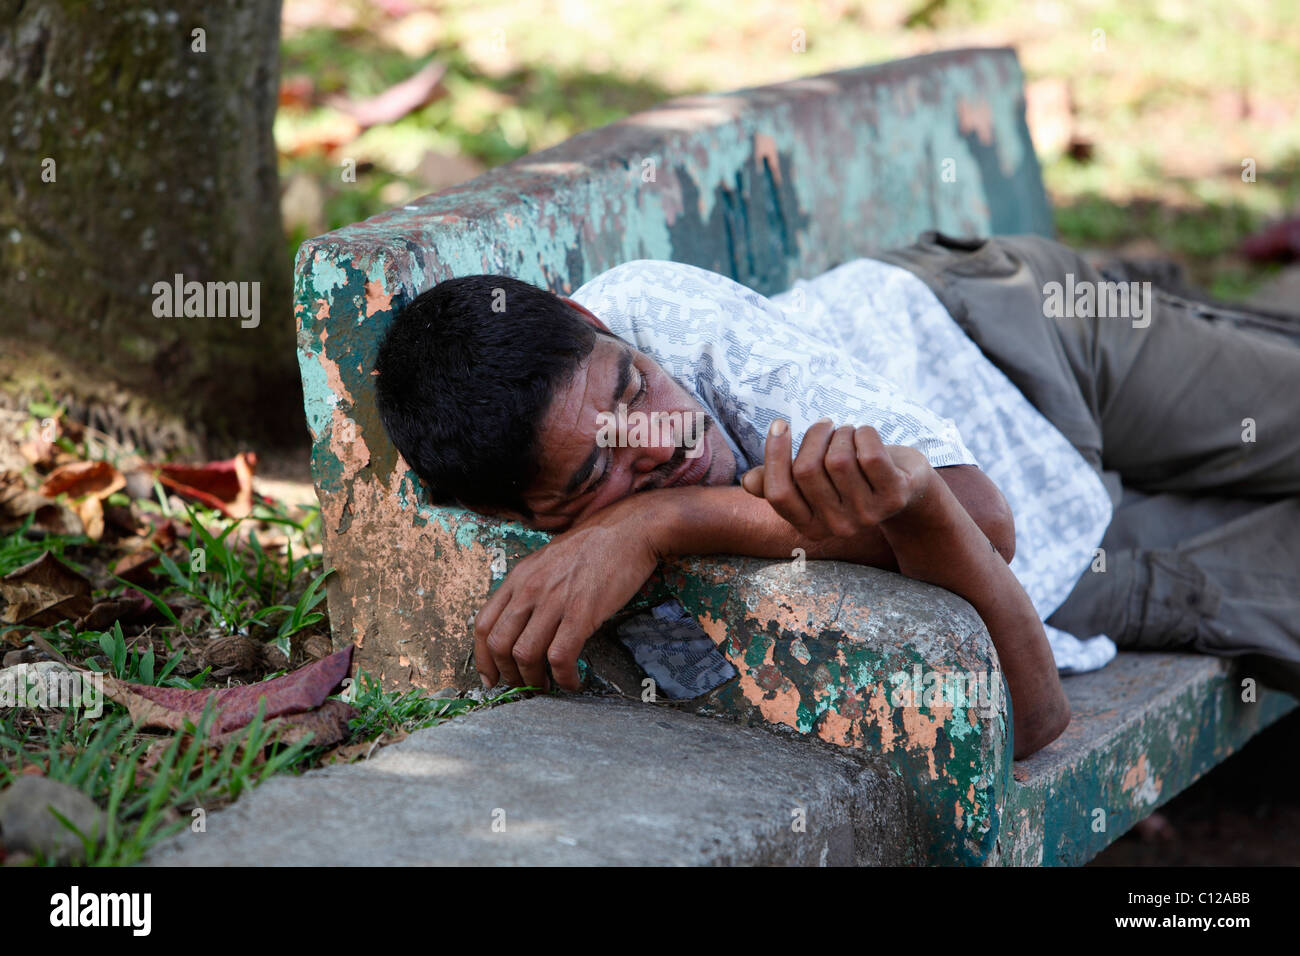 Un hombre Costarricense durmiendo en una banca del parque en Quepos, Costa Rica Foto de stock